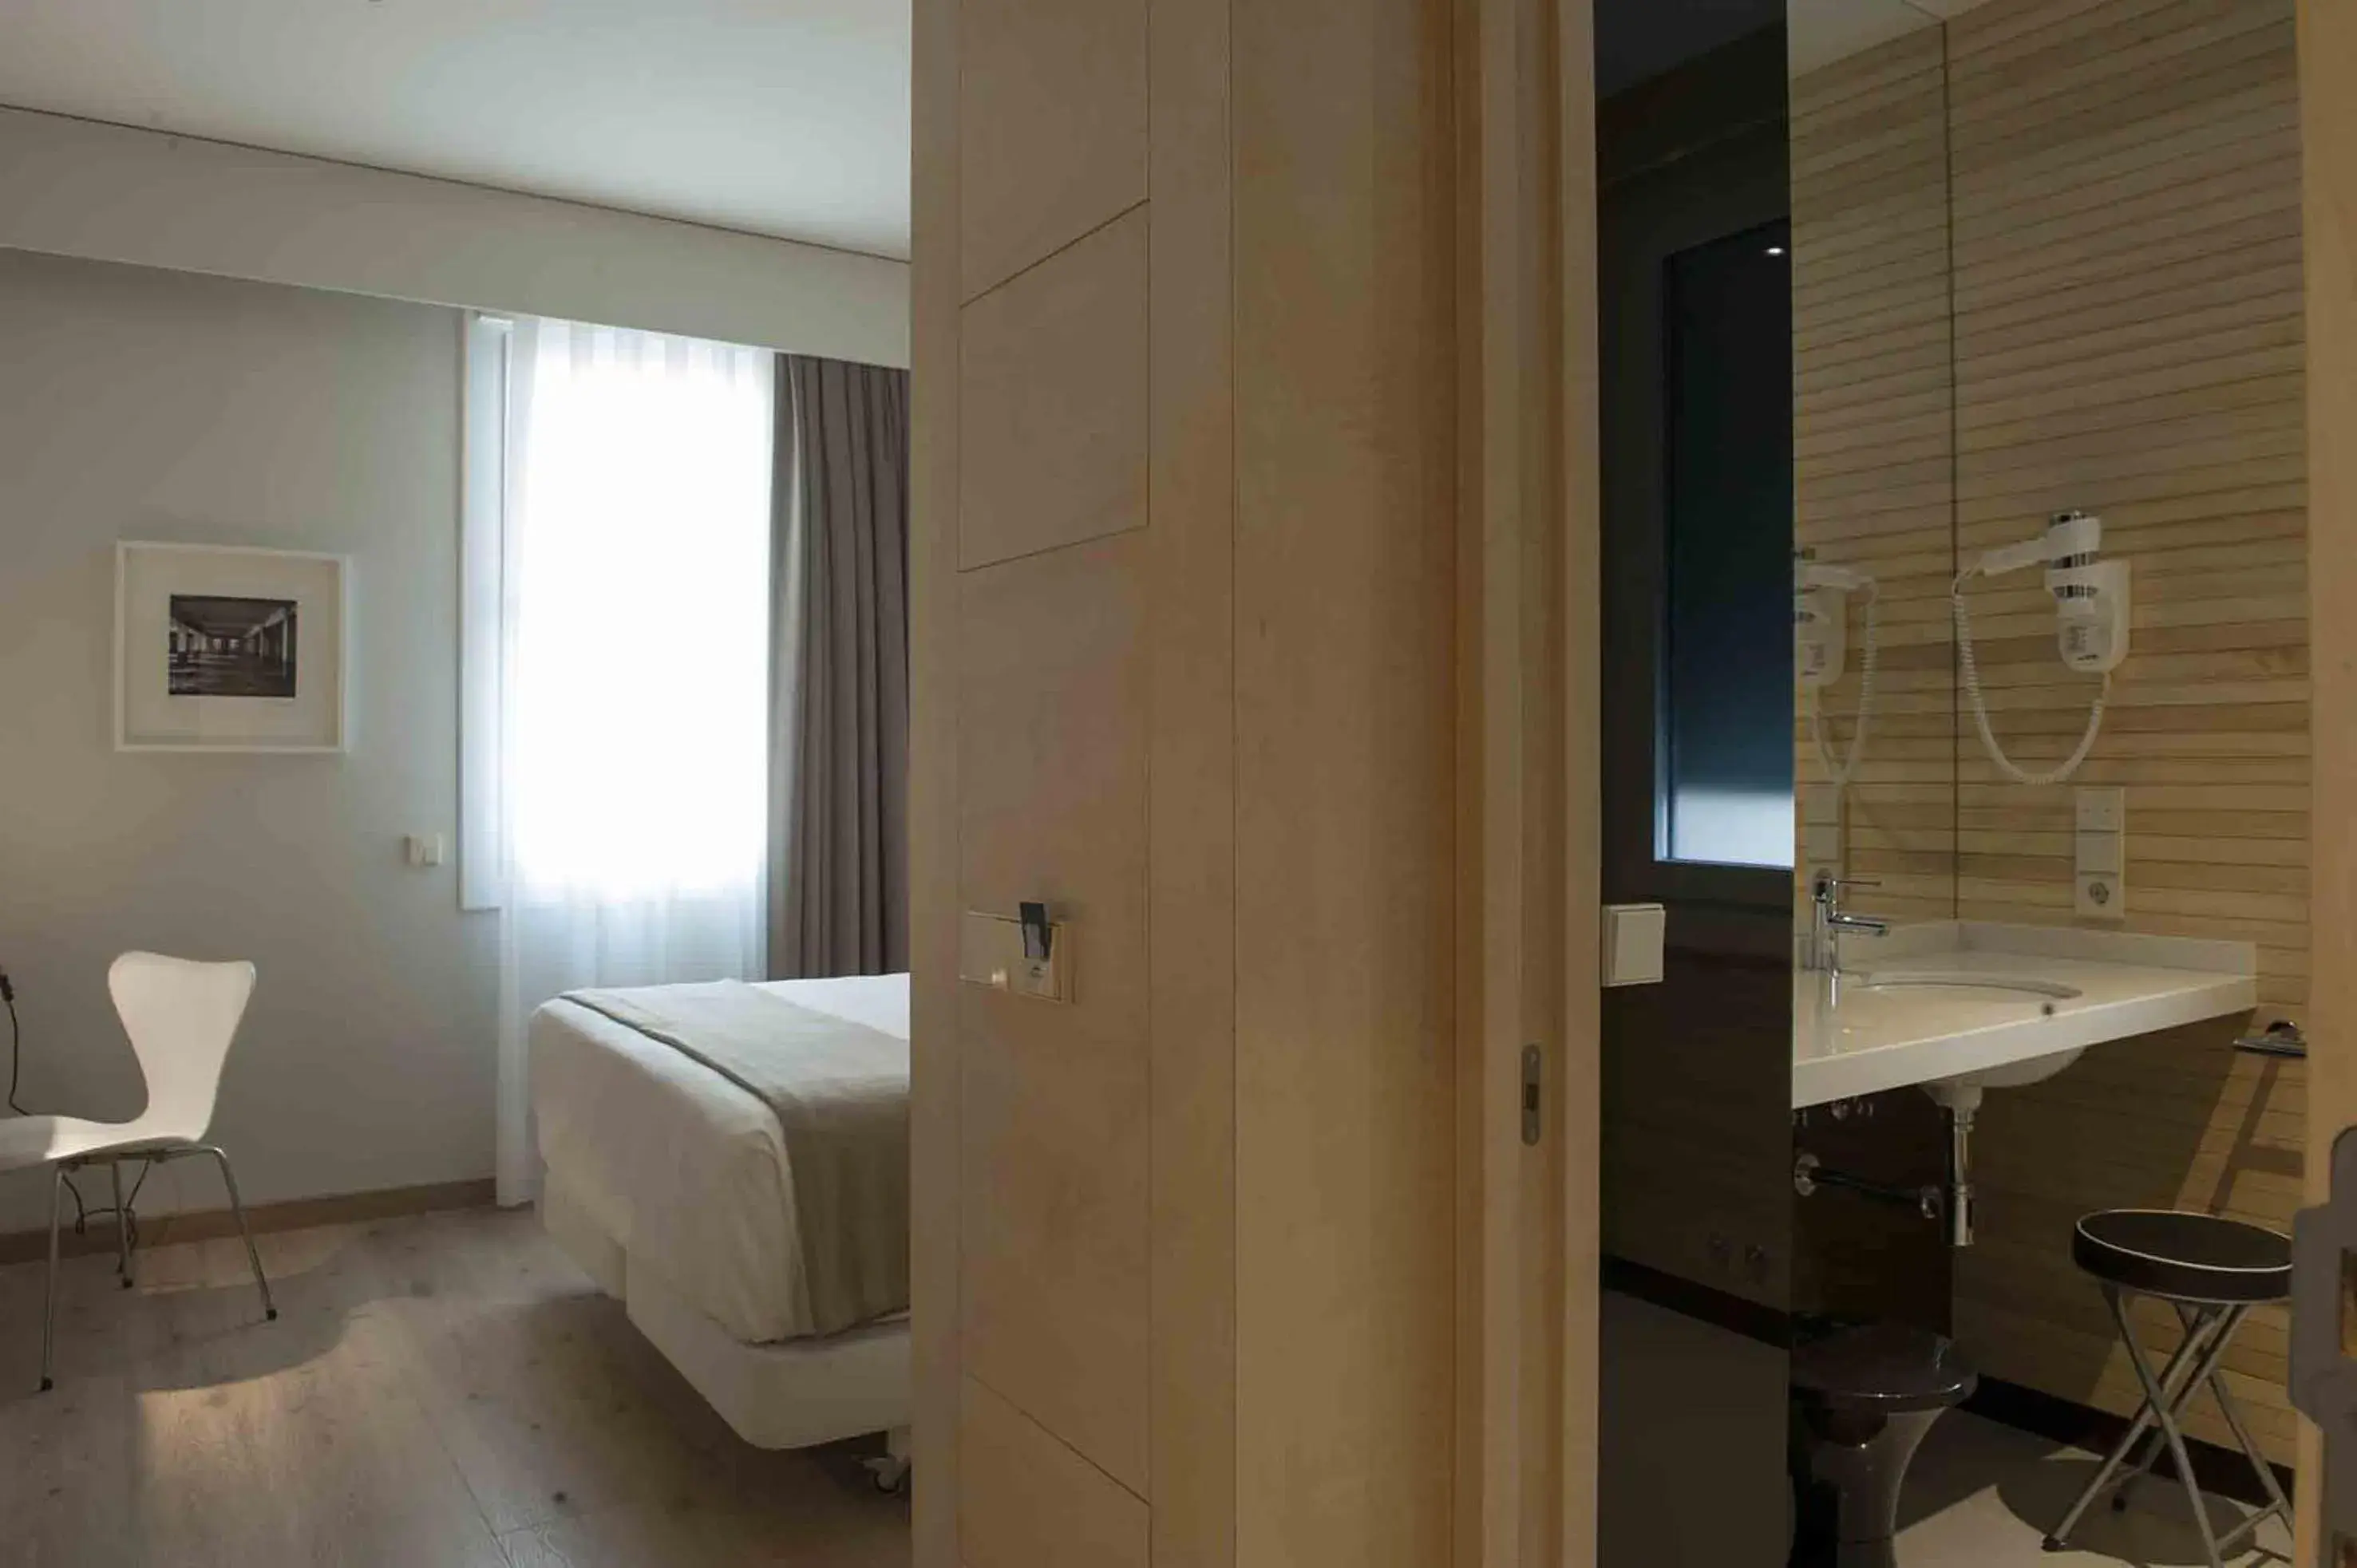 Bedroom, Bed in San Gil Plaza Hotel